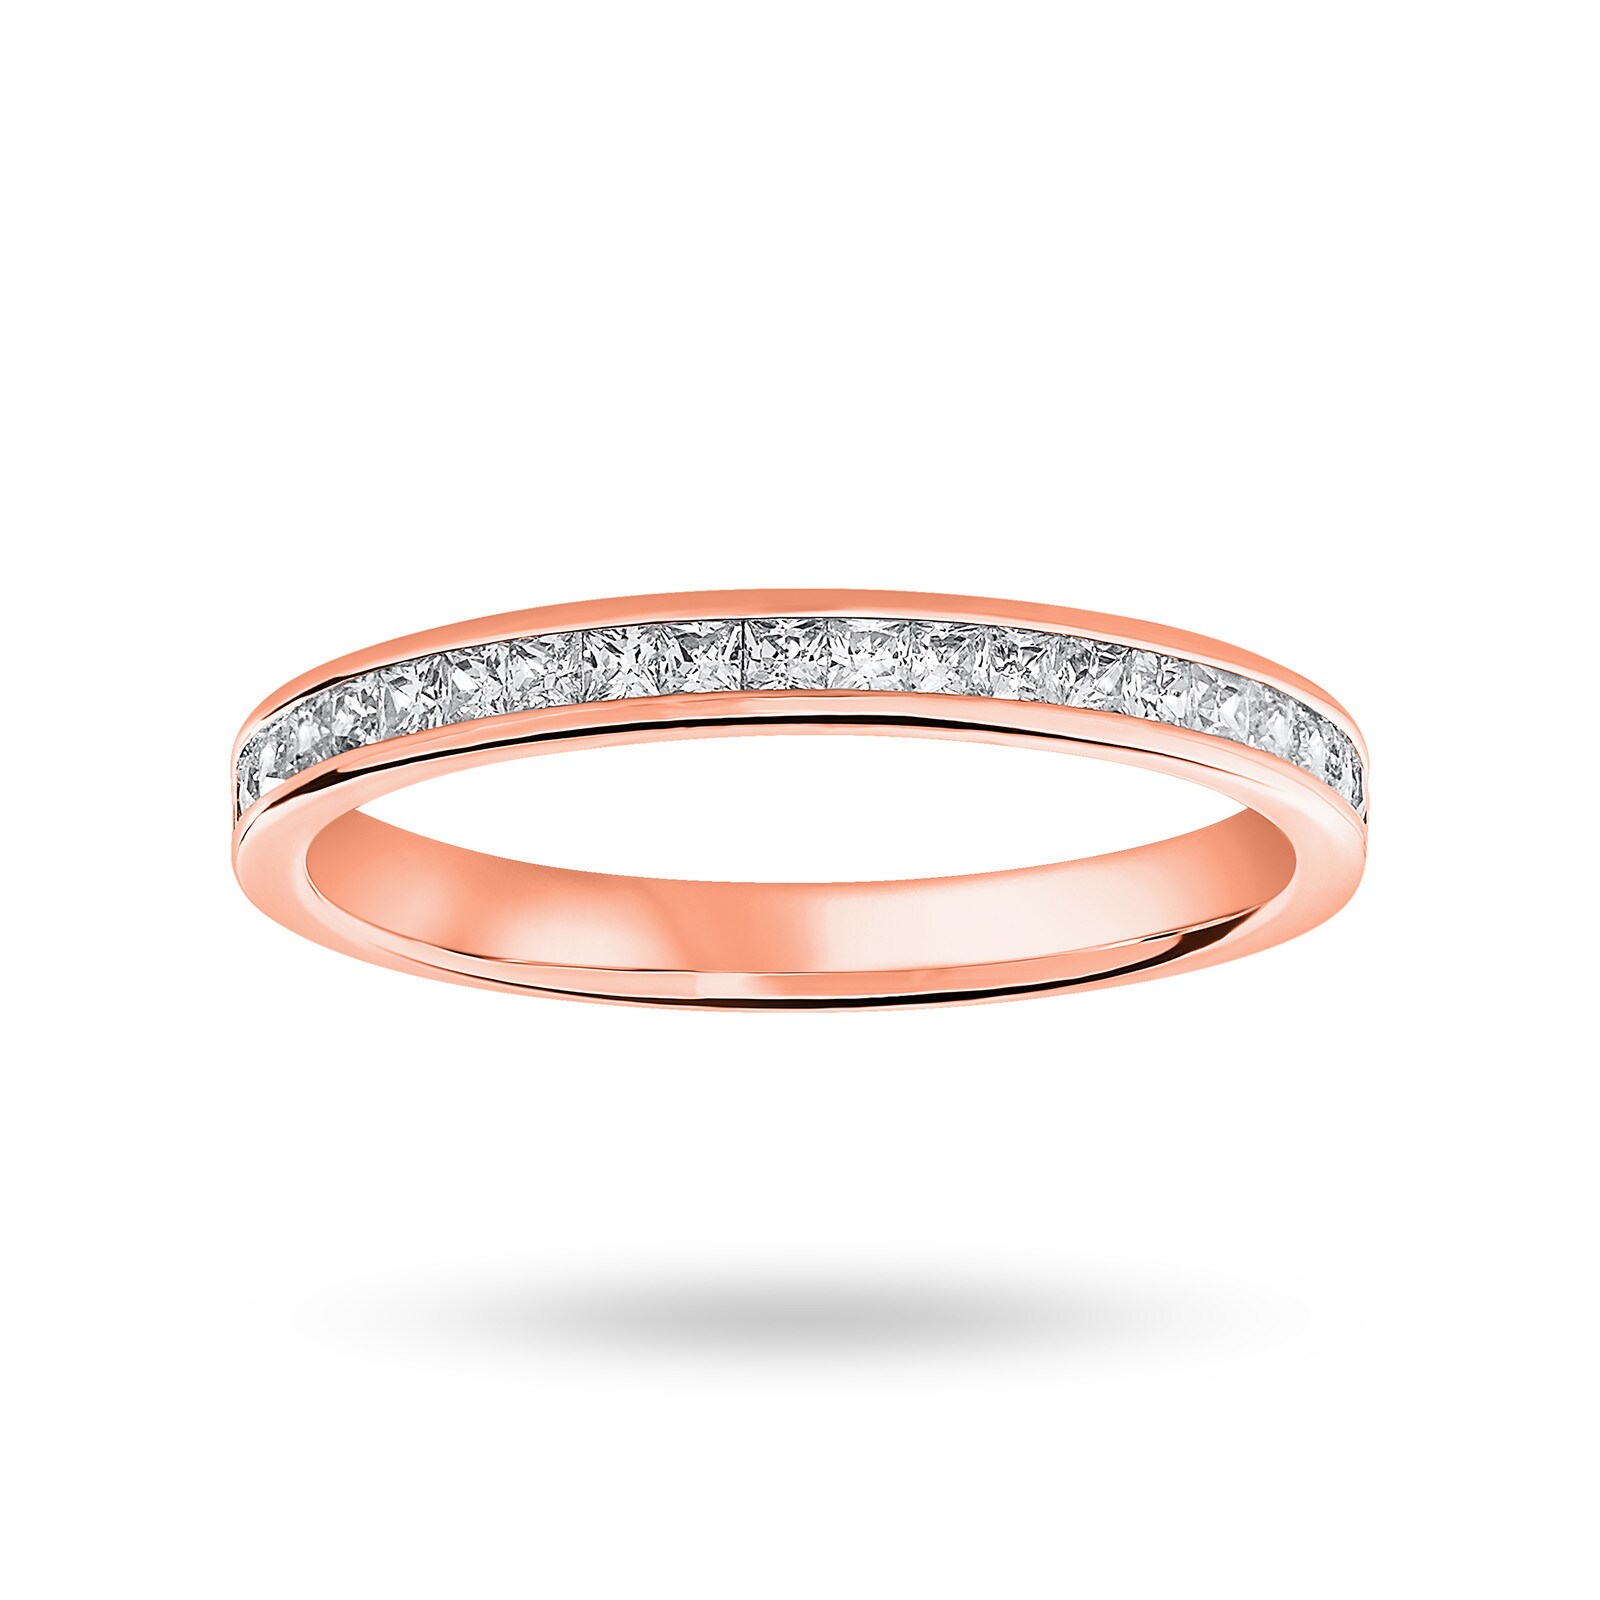 18 Carat Rose Gold 0.33 Carat Princess Cut Half Eternity Ring - Ring Size N